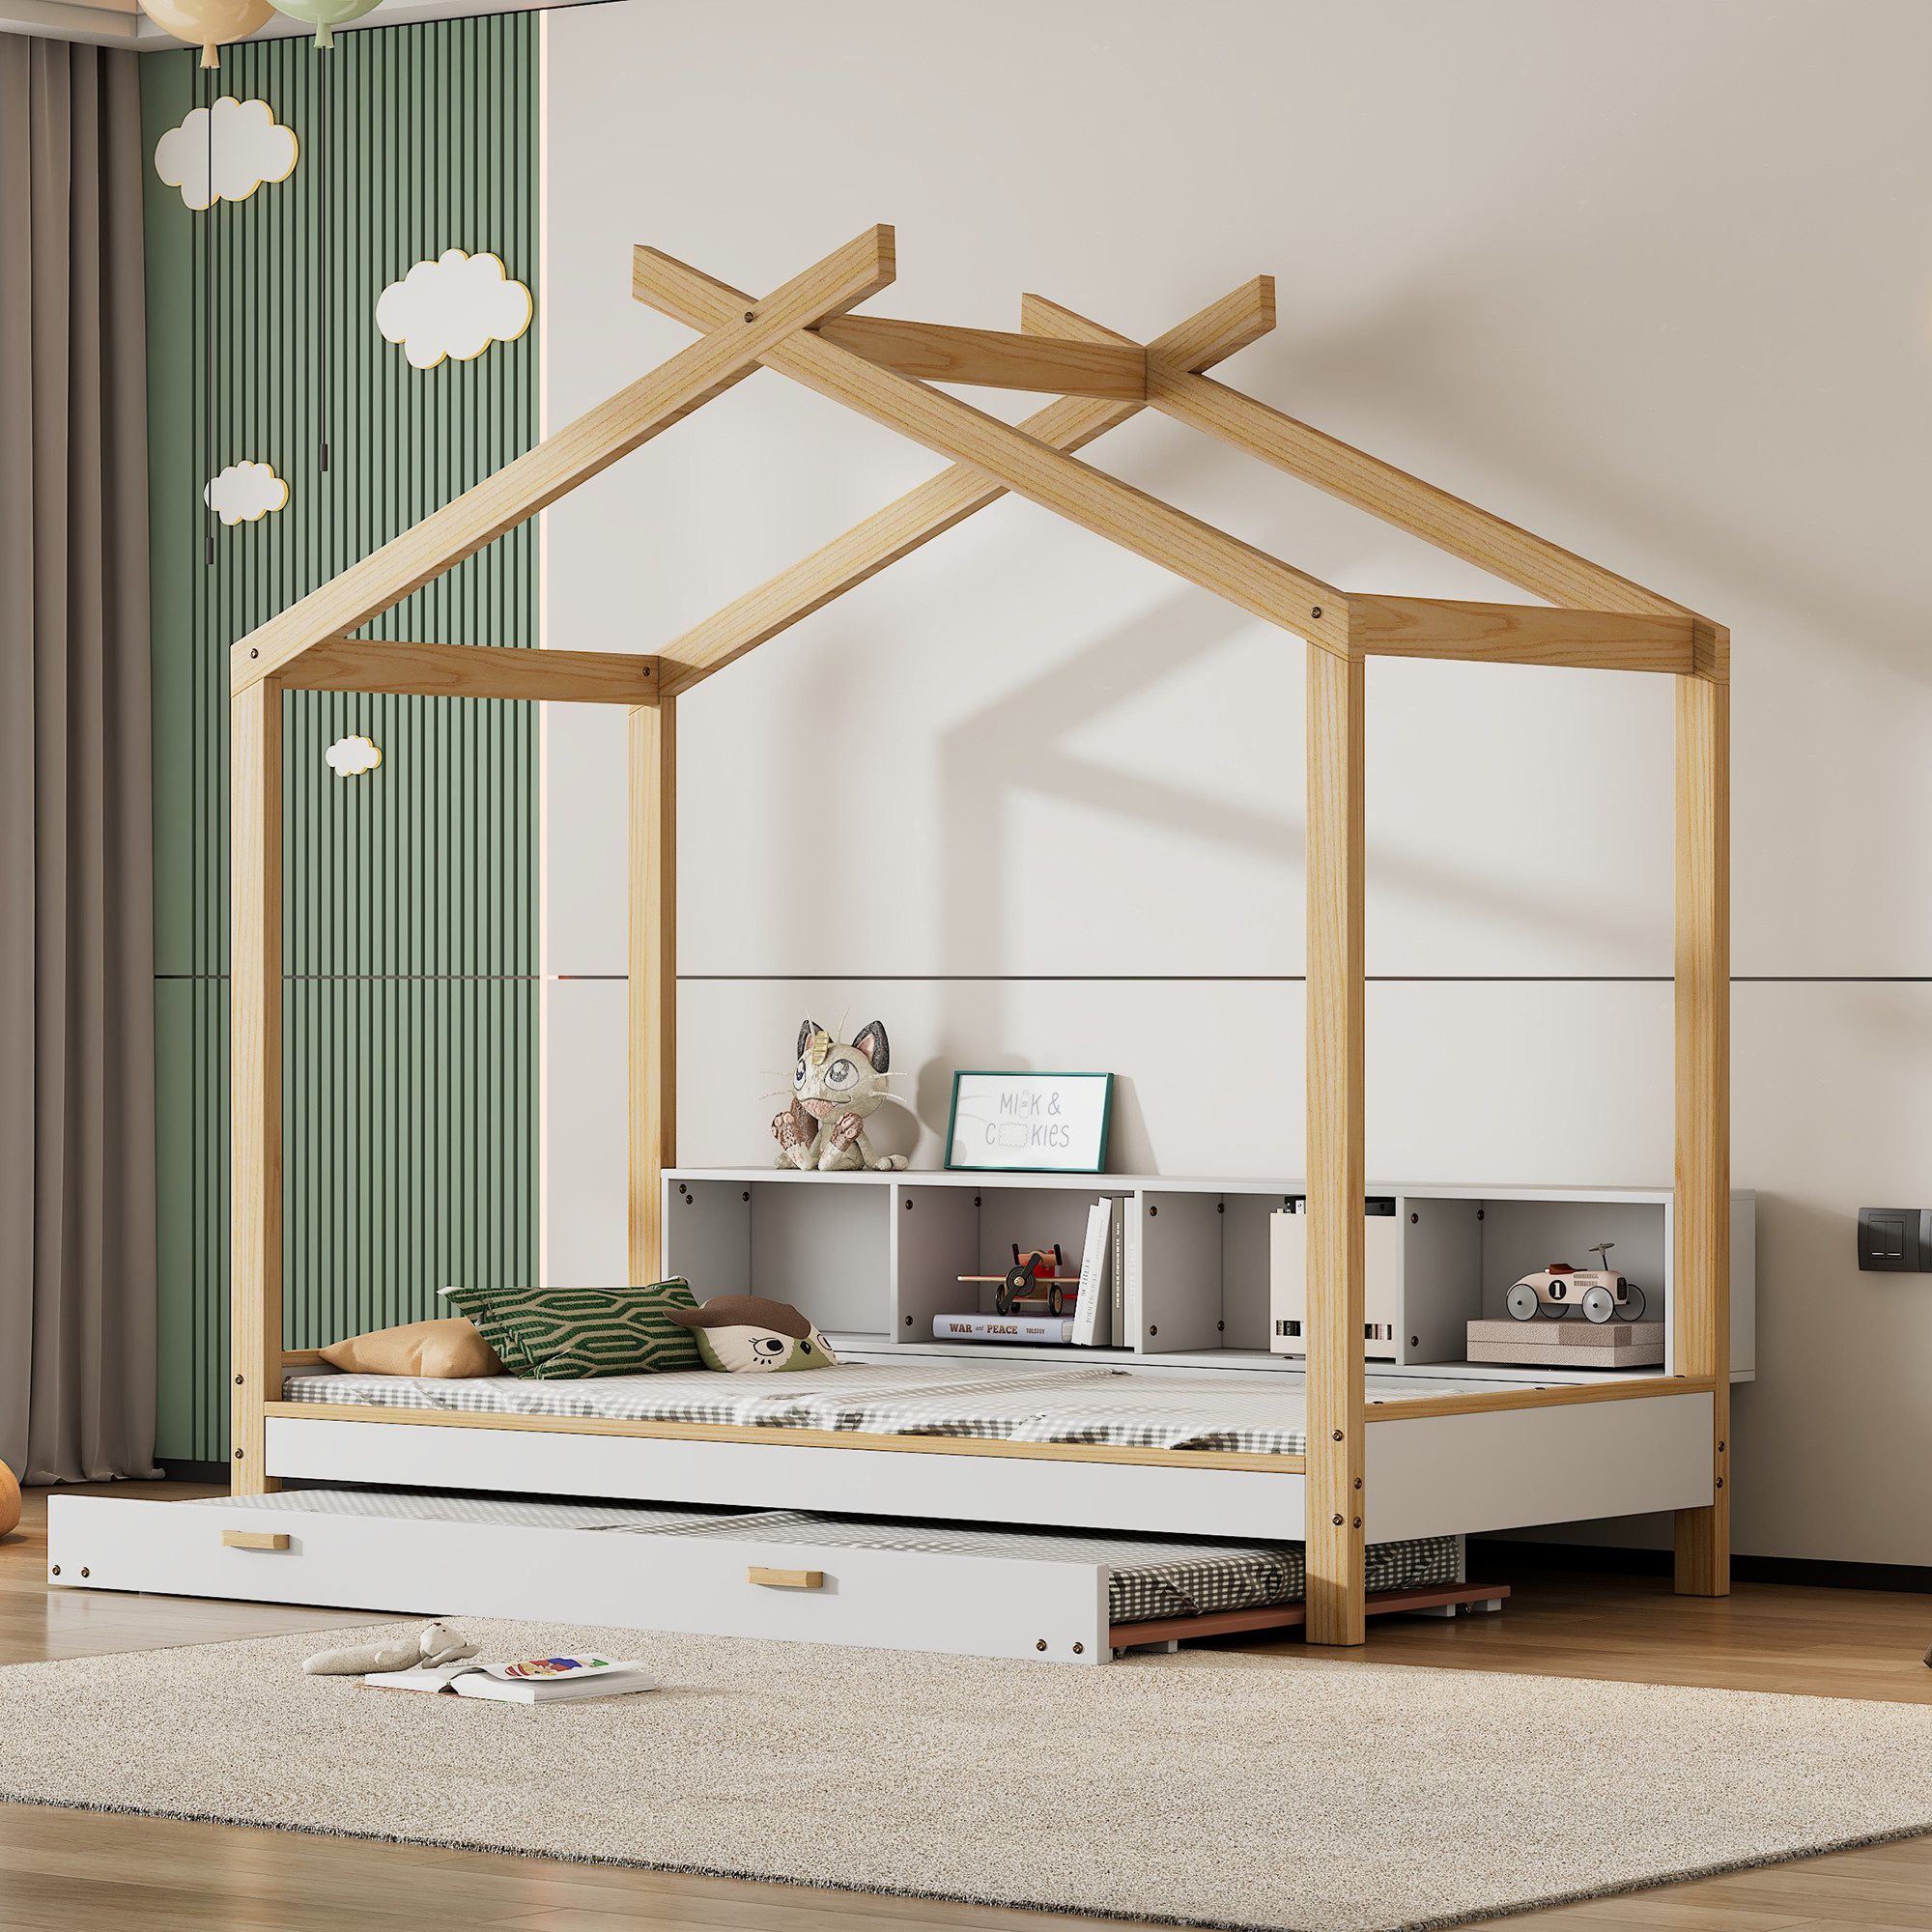 IDEASY Hausbett Robuste 90x200cm Holzbett mit 4 Regalfächern, ausziehbarem (set), Rollbett, Dachdesign, aus Kiefernholz, einfach zu montieren